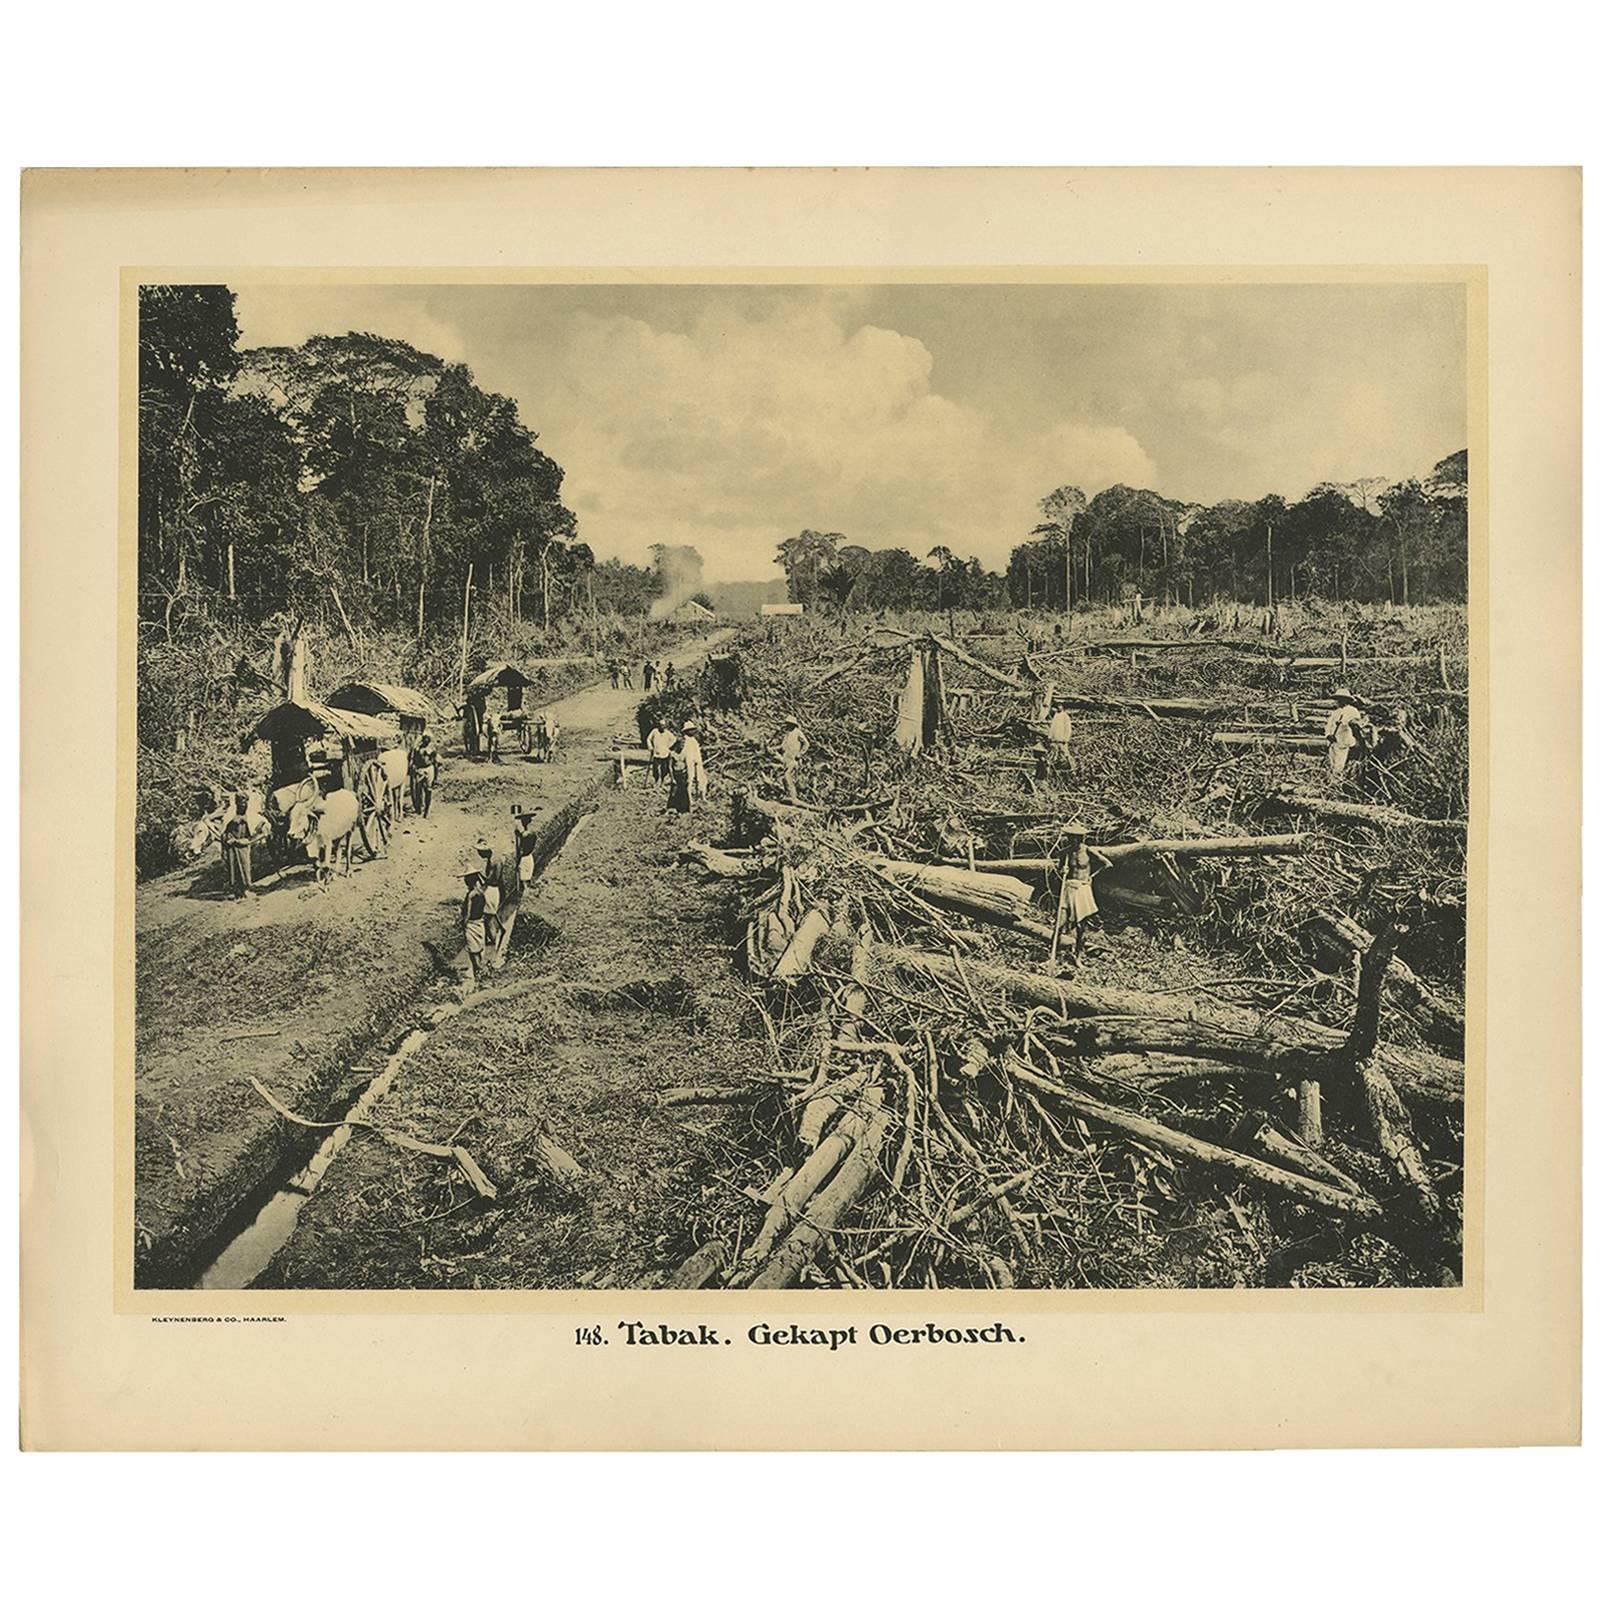 Assiette photographique illustrant le bois feuillus de Kleynenberg, 1910